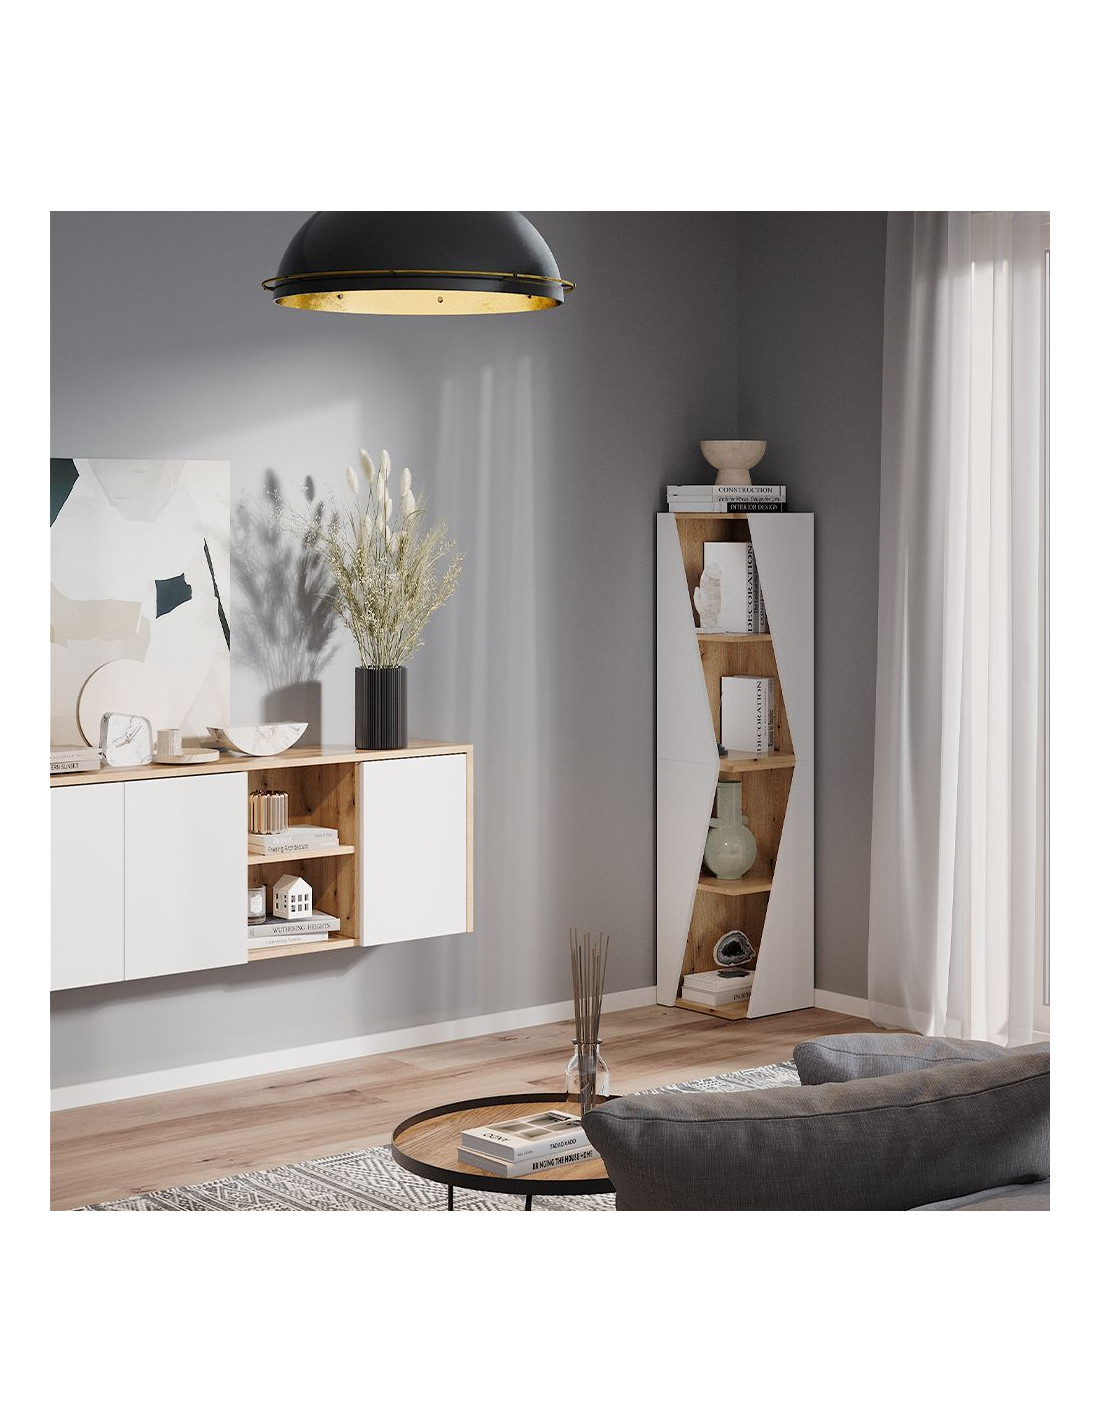 Bibliothèque design meuble rangement livre étagère chêne - Ciel